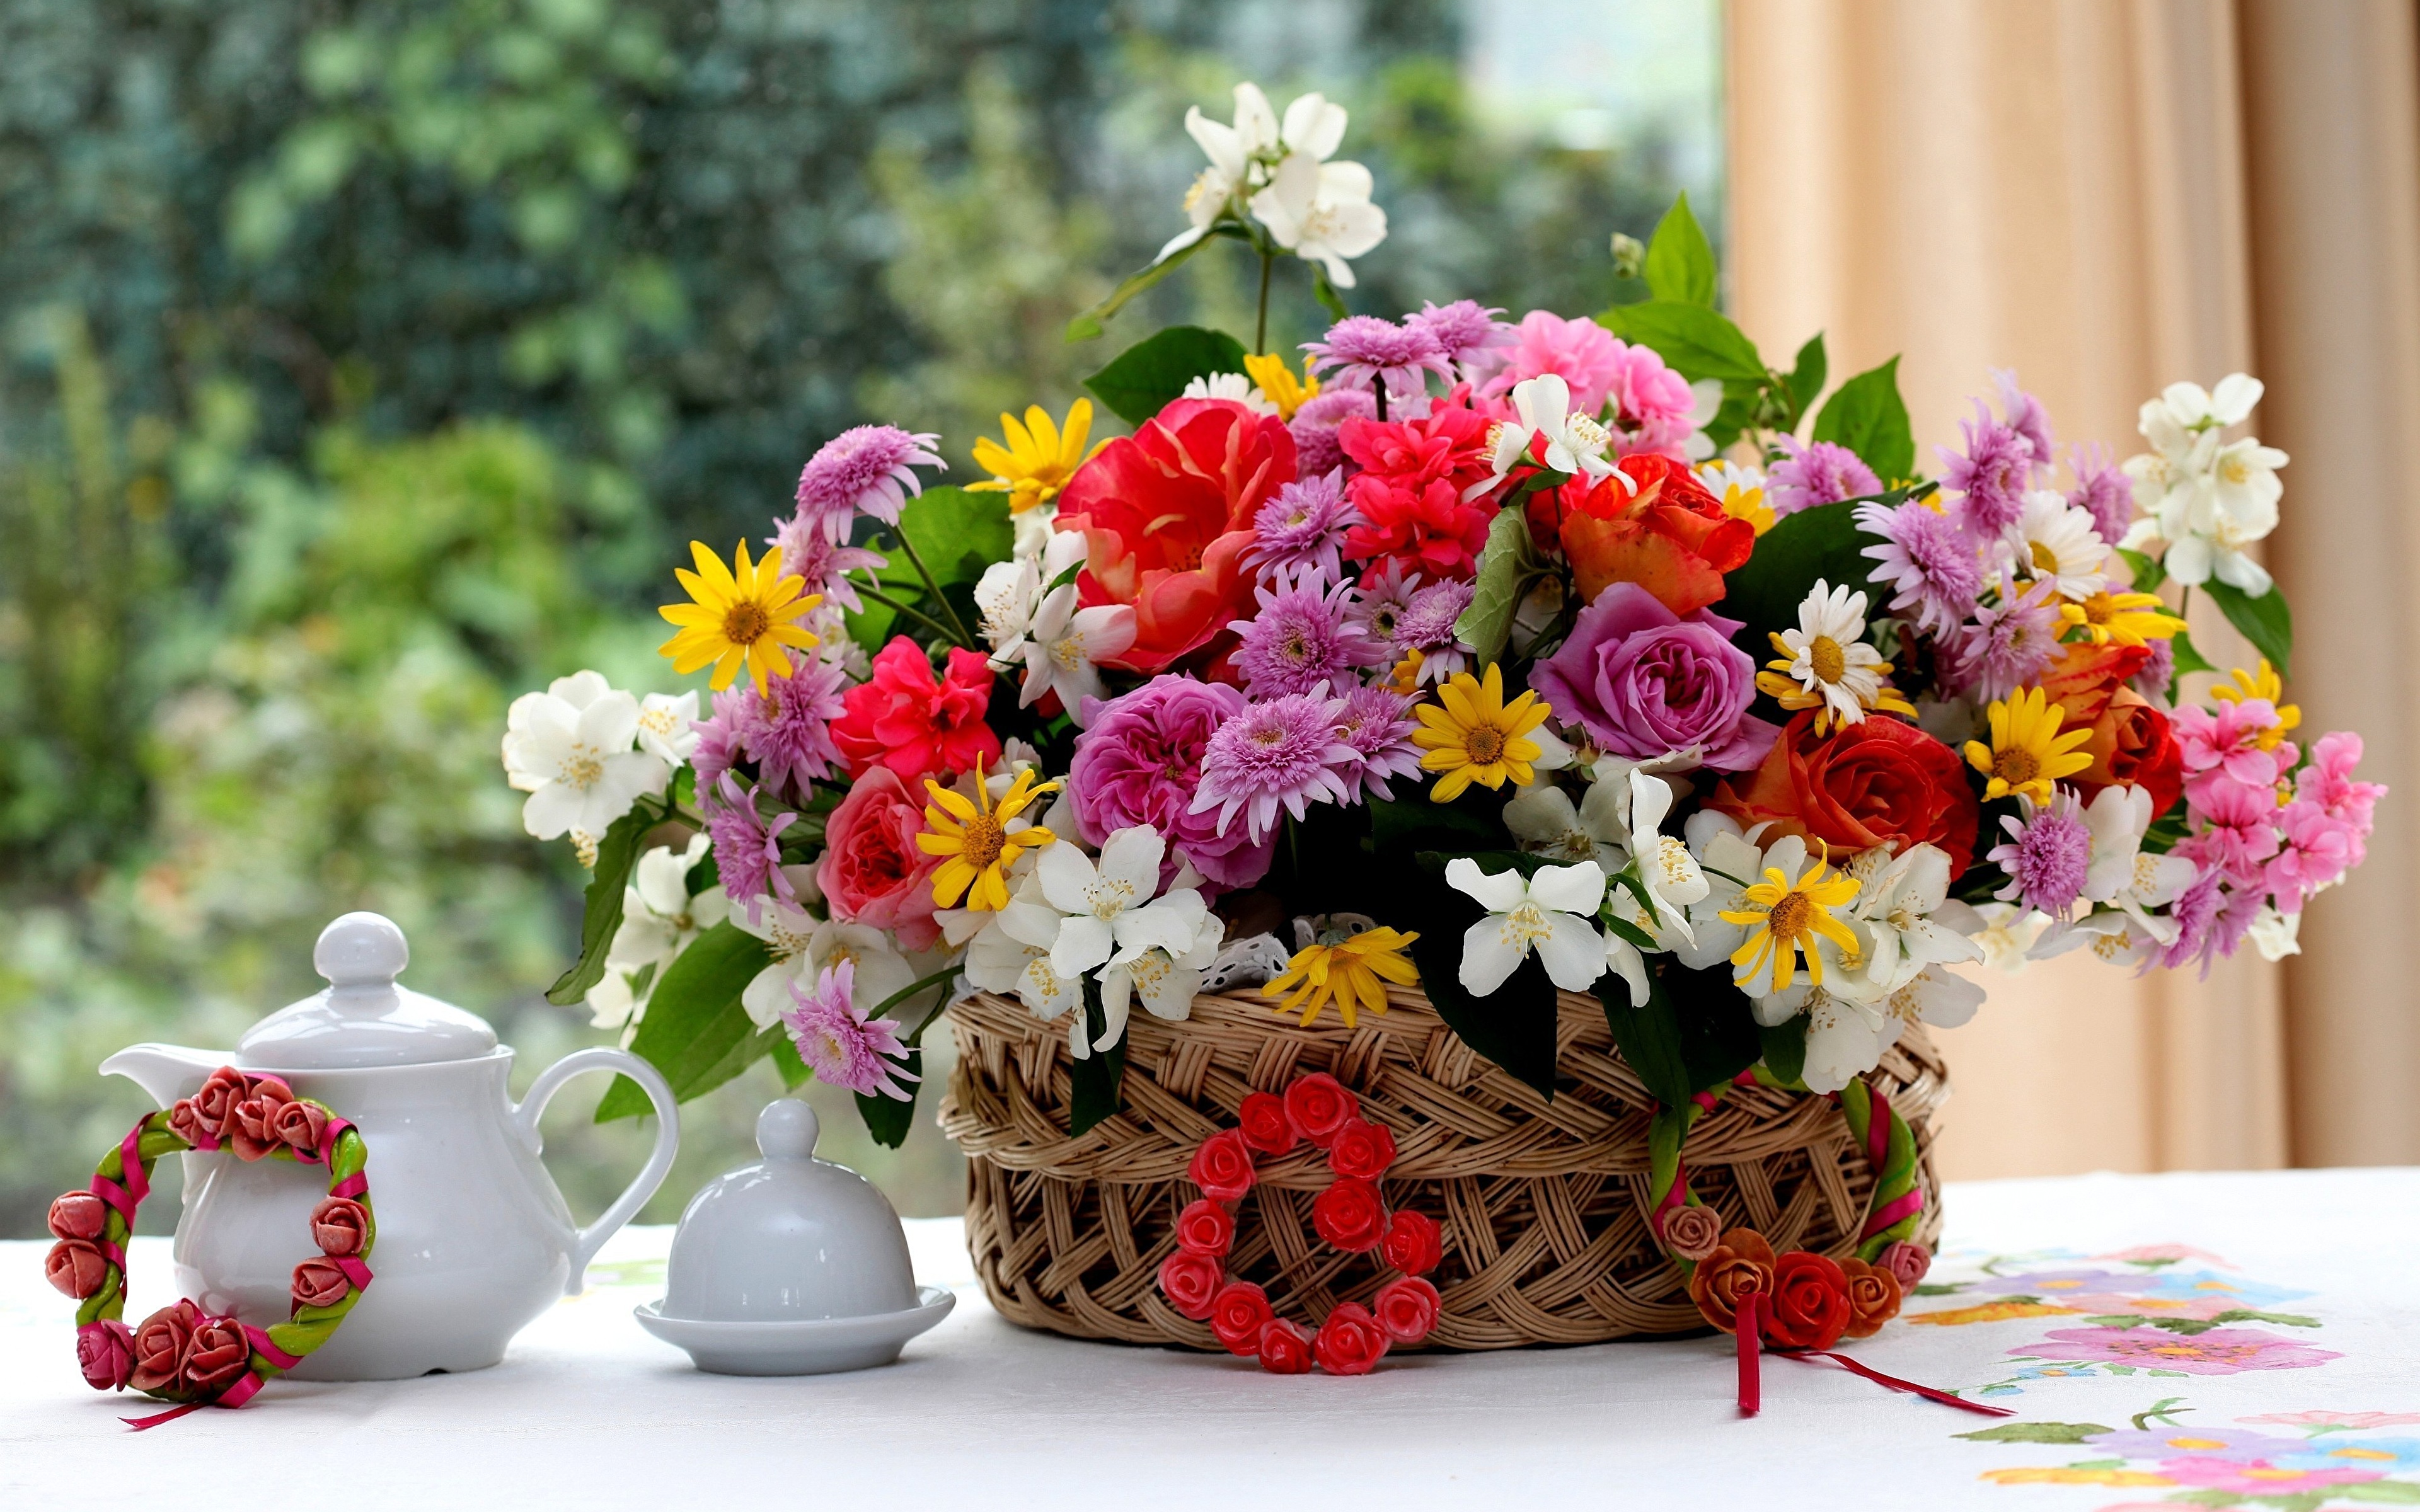 Картинка с цветами на столе. Красивый букет. Шикарный букет цветов. Шикарные цветы. Прекрасный букет цветов.